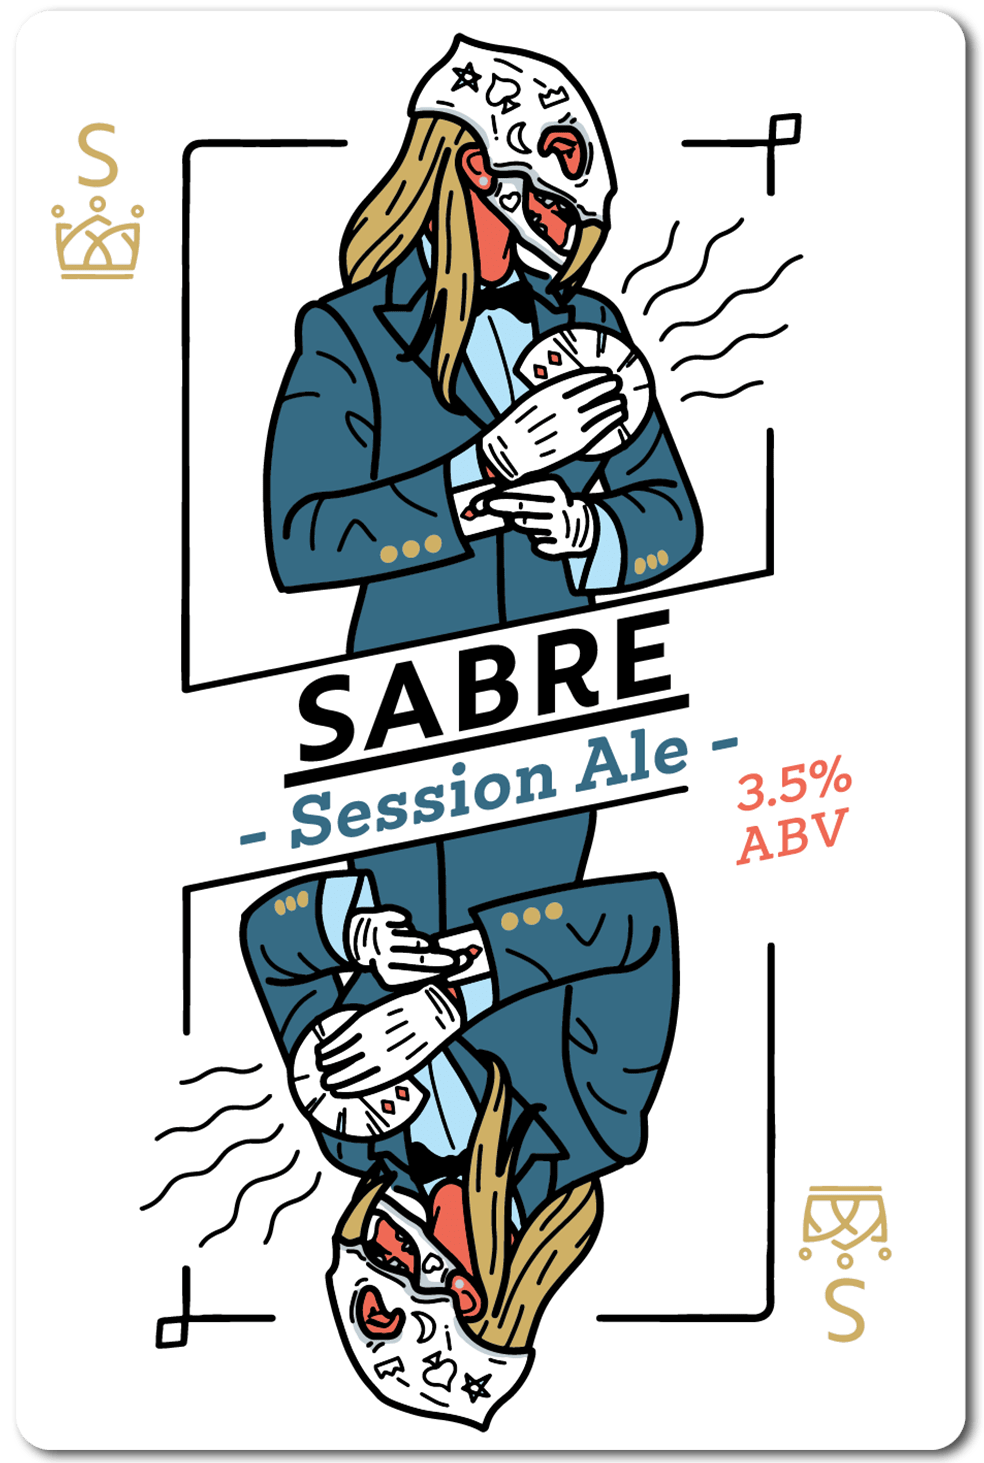 sabre-session-ale-1.png